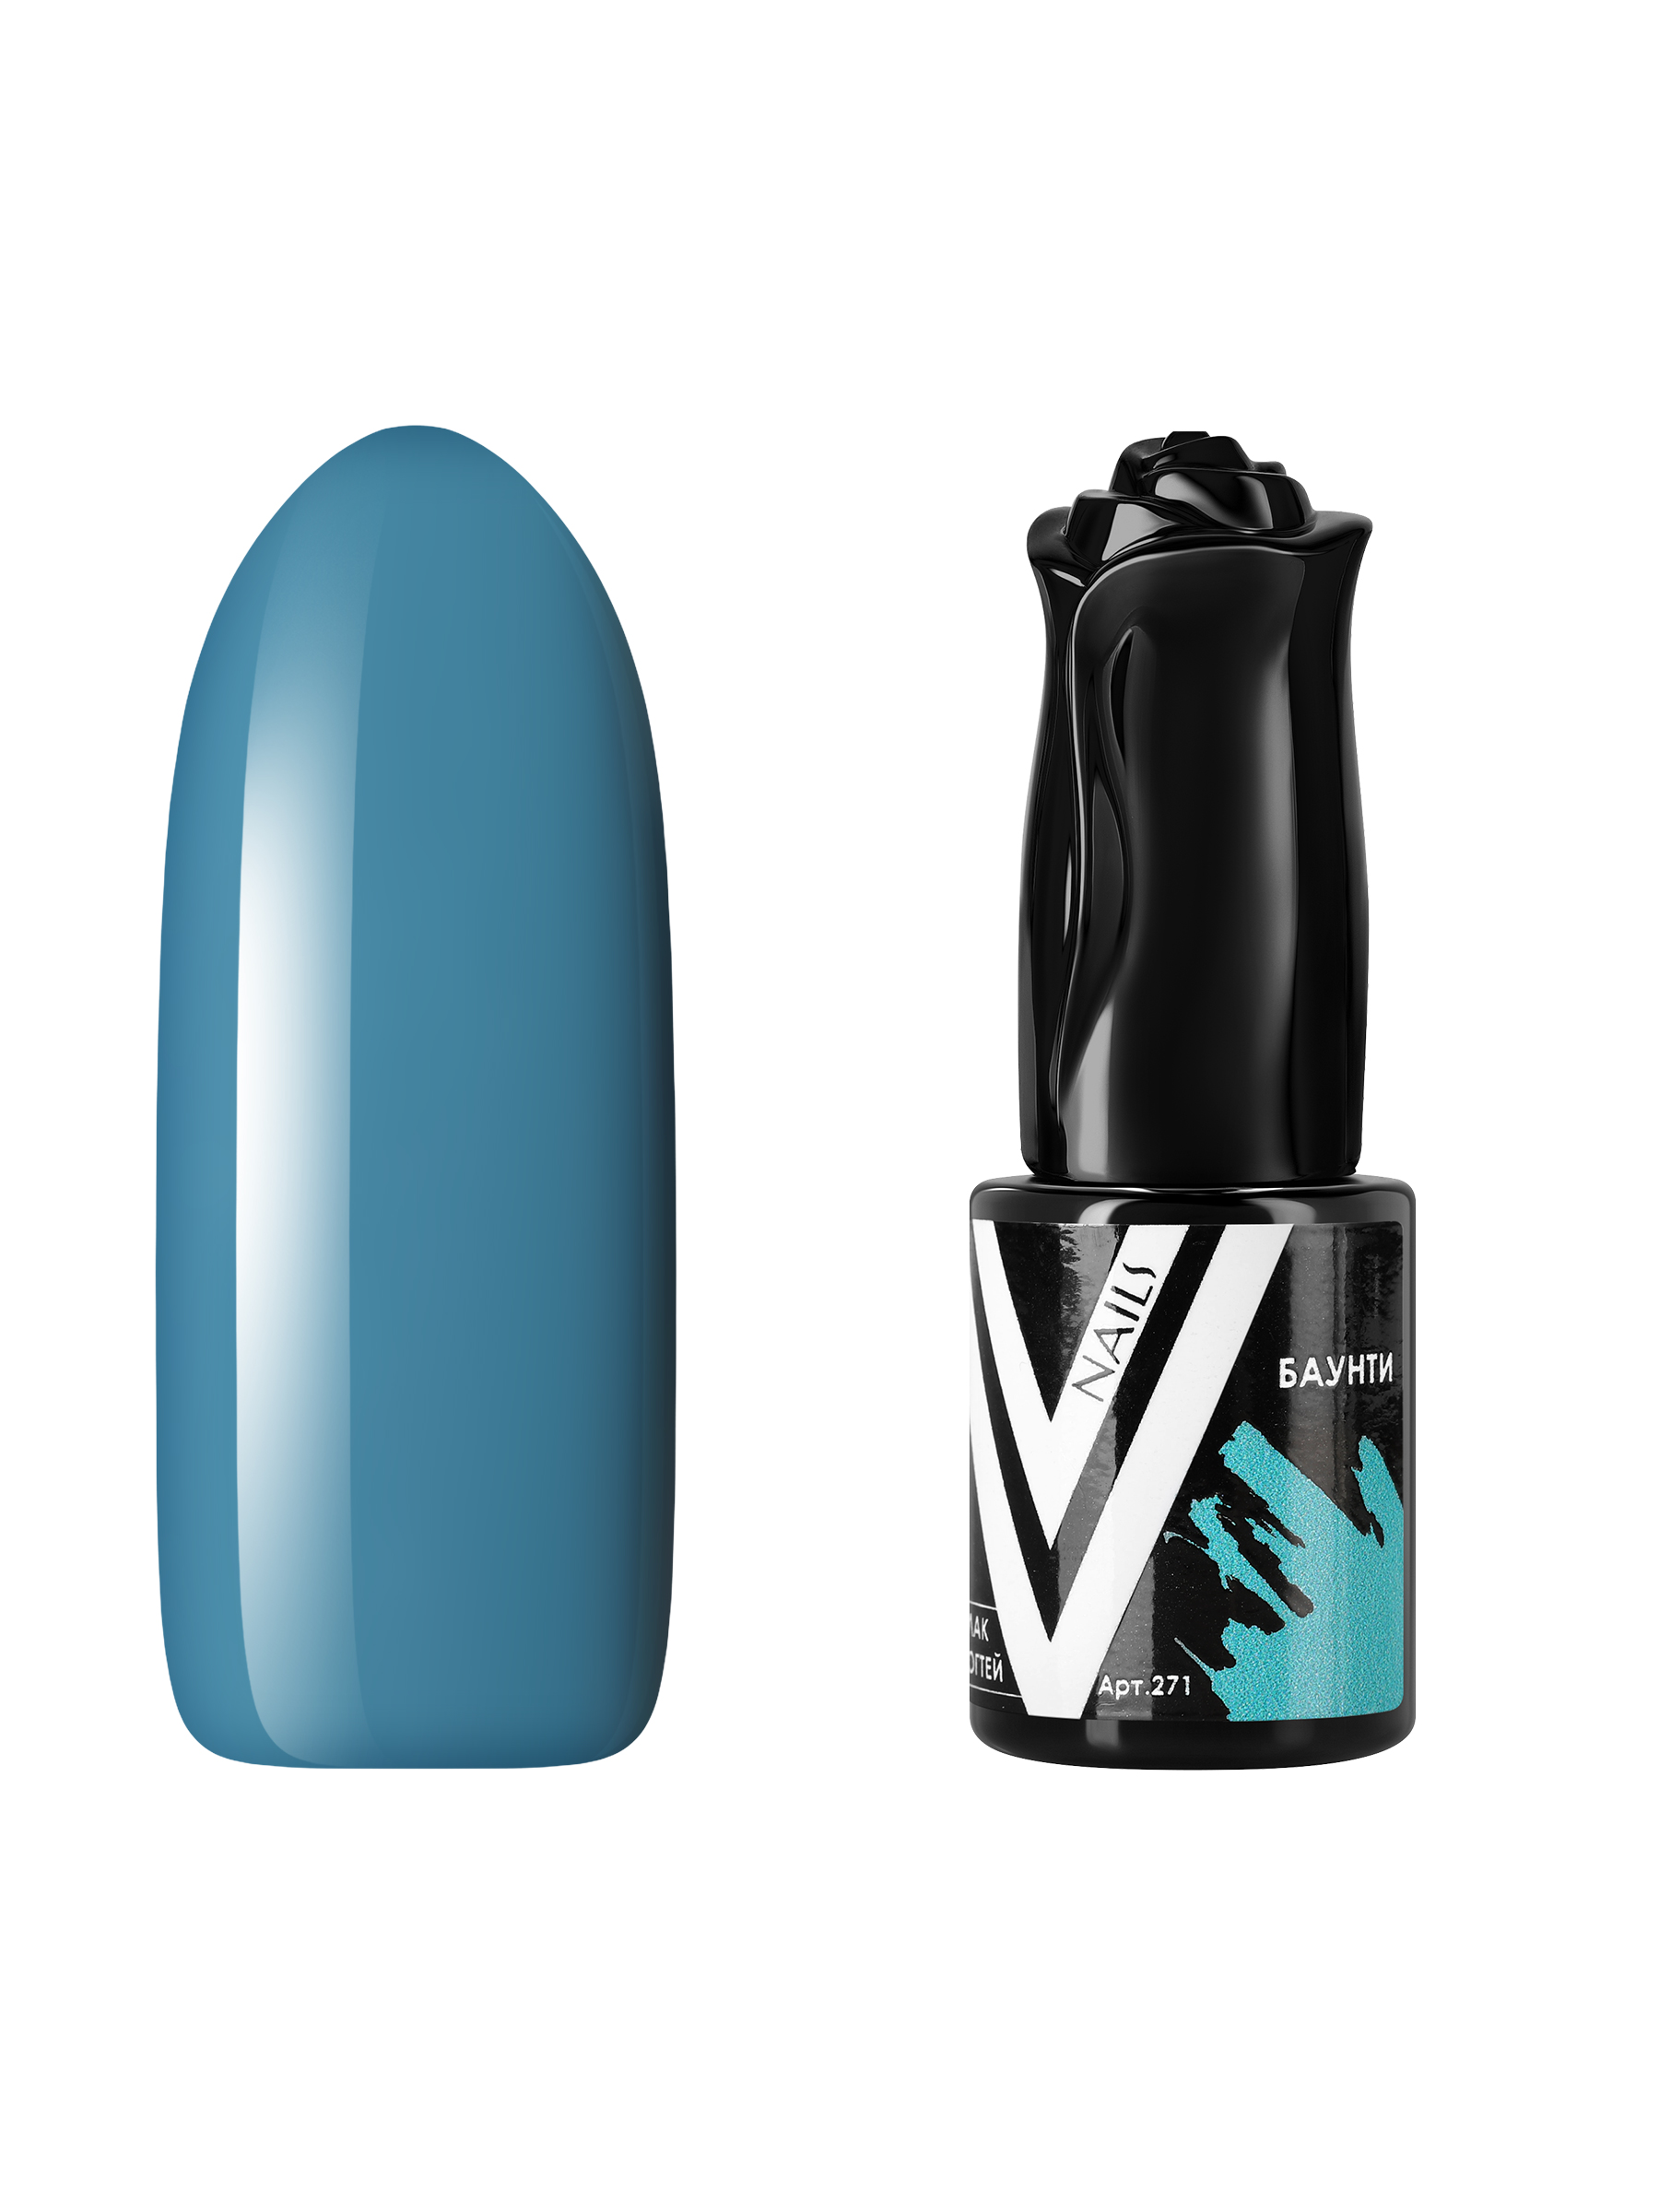 Гель-лак для ногтей Vogue Nails плотный самовыравнивающийся, темный, голубой, 10 мл дегидратирующий тоник для рук vogue nails очищающий антибактериальный для маникюра 250 мл